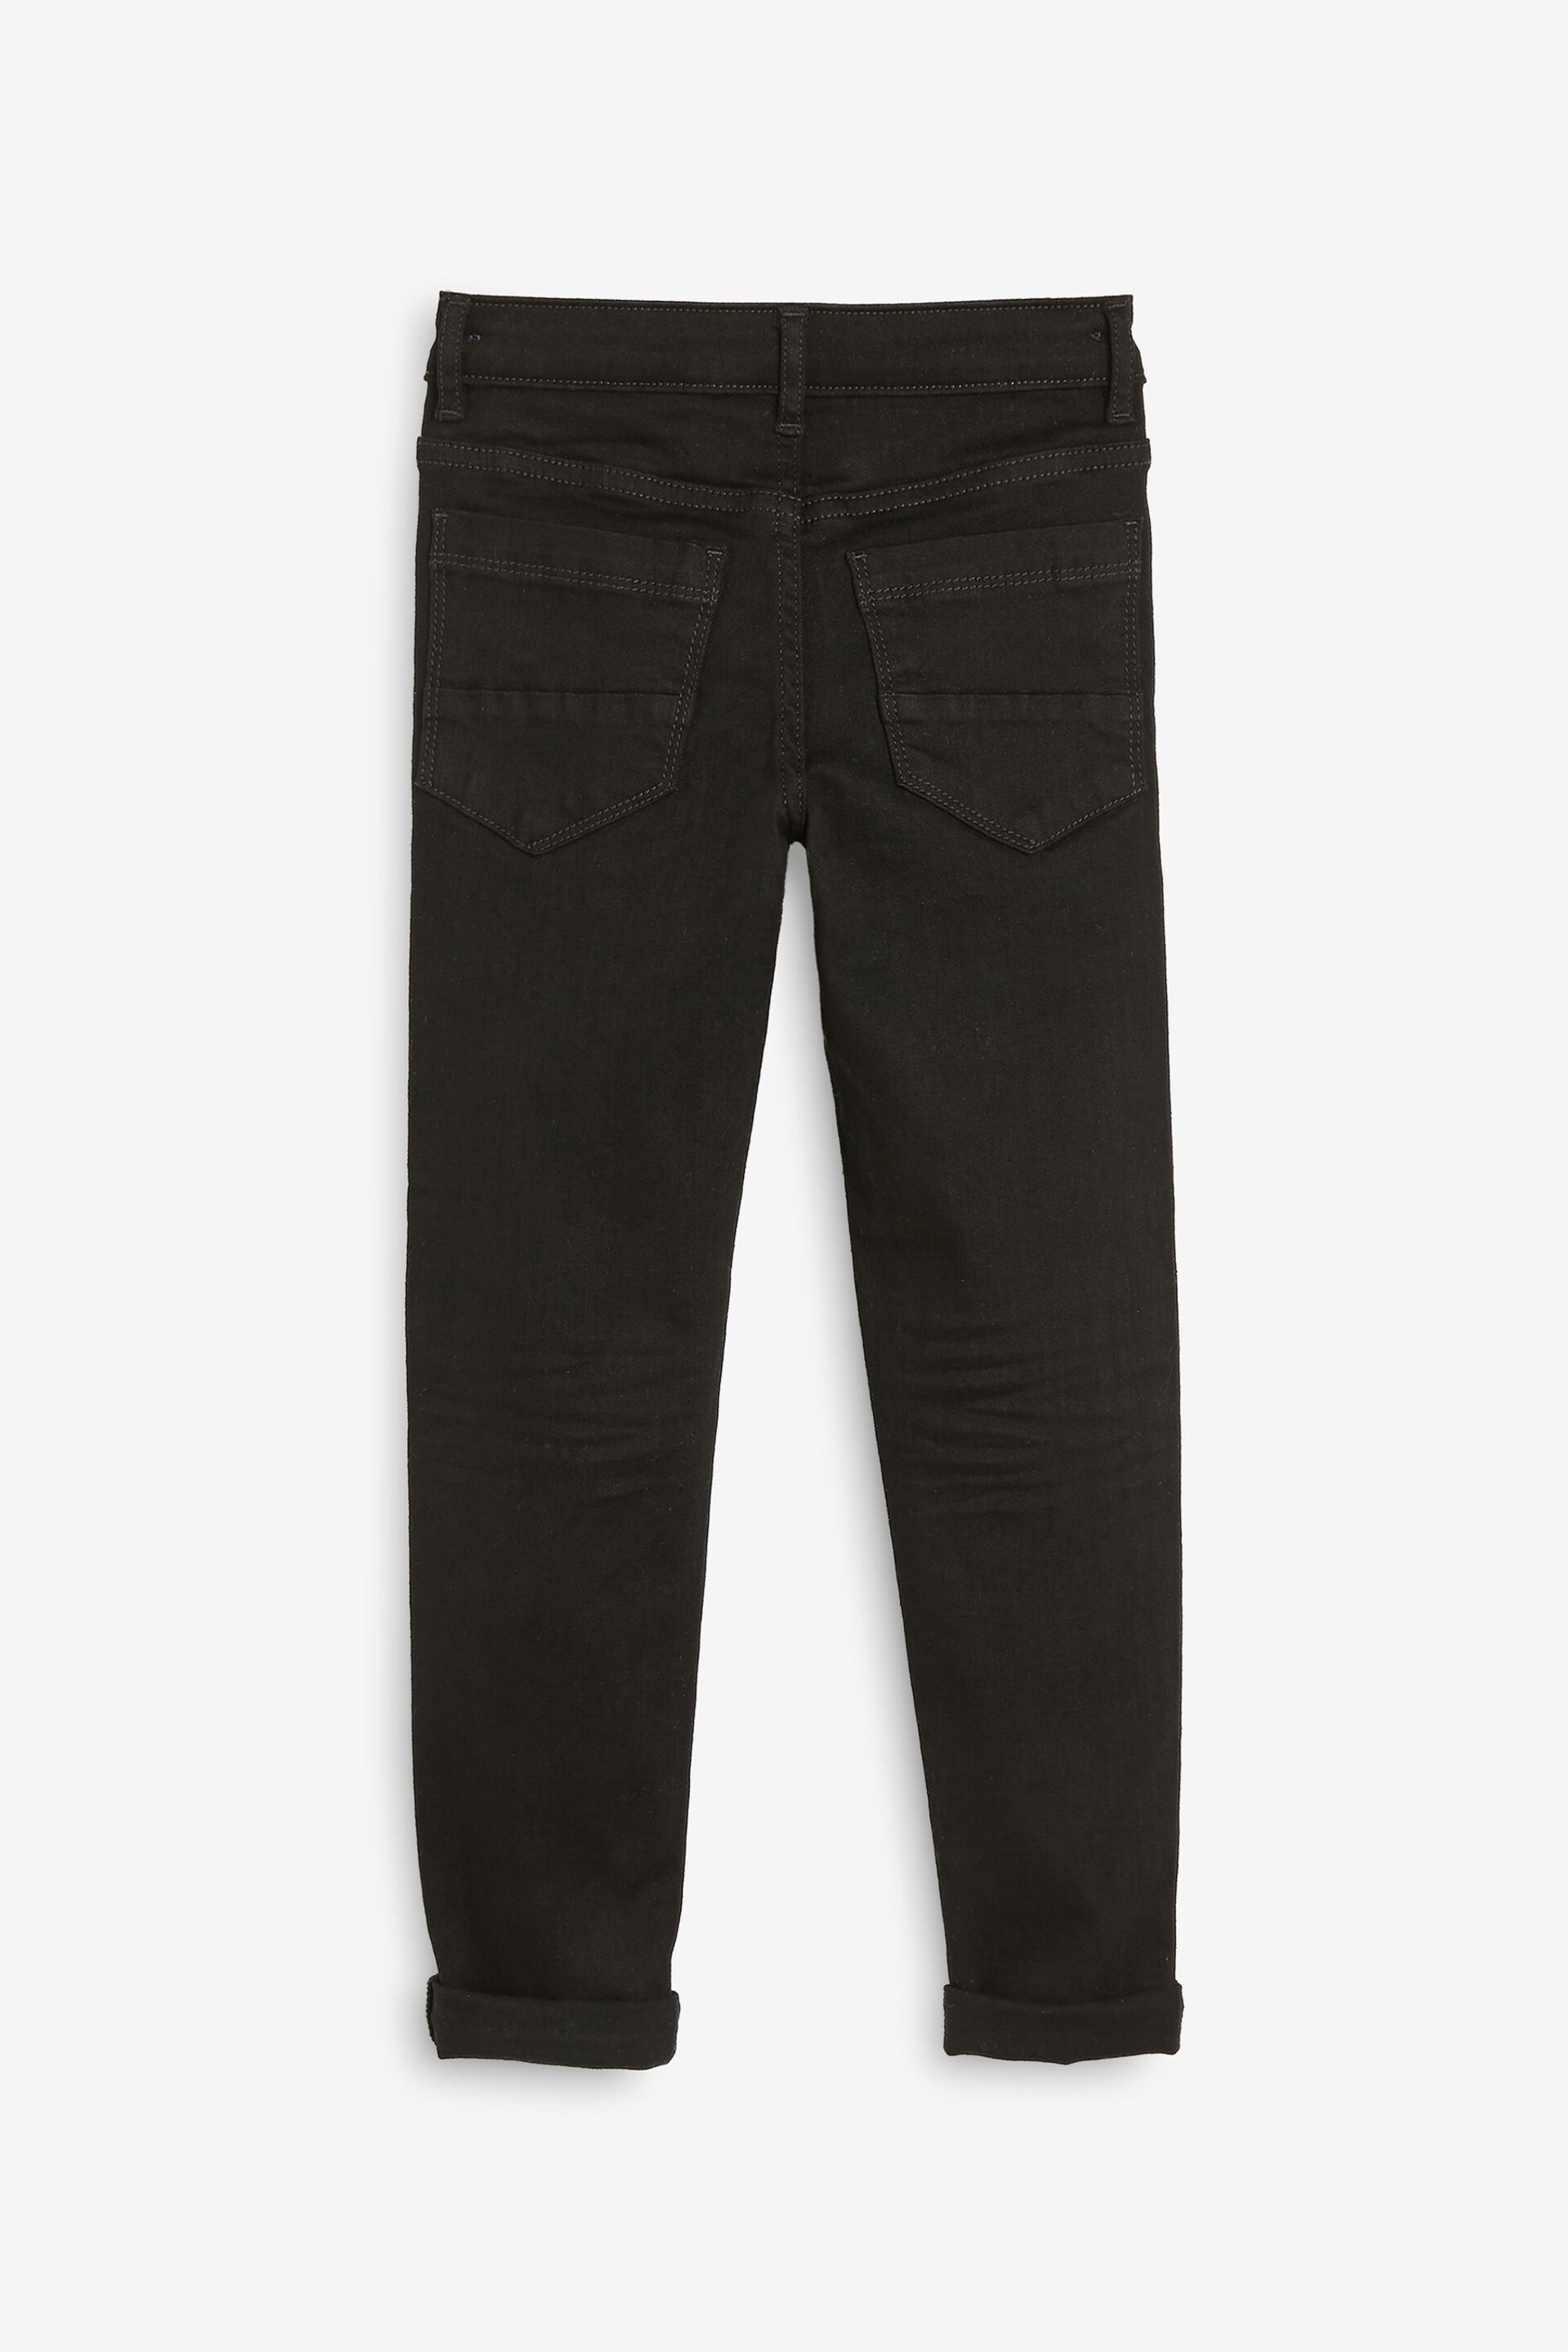 Black Denim Super Skinny Fit Mega Stretch Adjustable Waist Jeans (3-16yrs) - Image 5 of 6